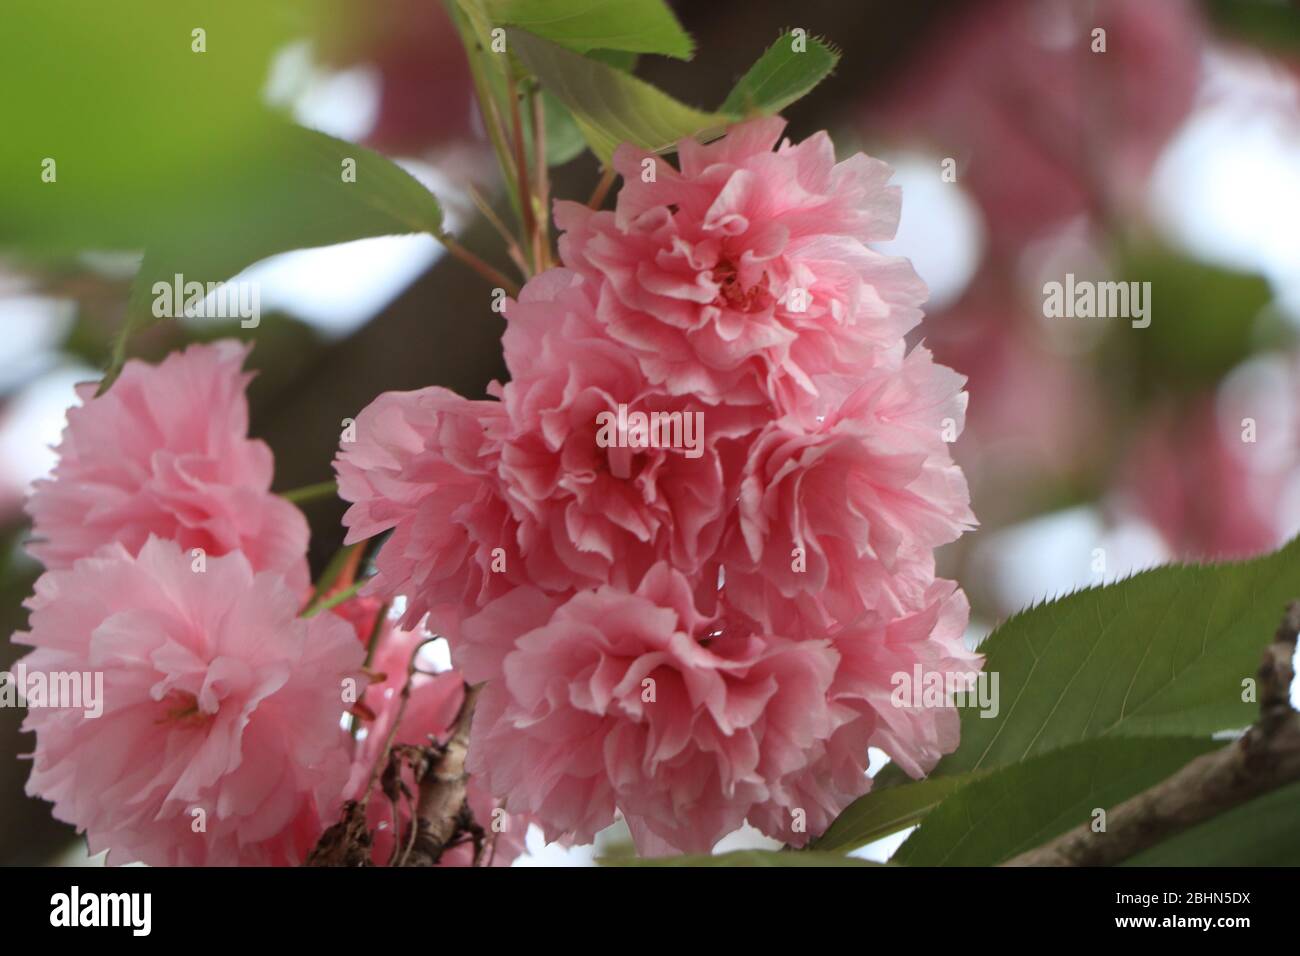 Gros plan d'une fleur rose sur une plante. Photo de haute qualité Banque D'Images